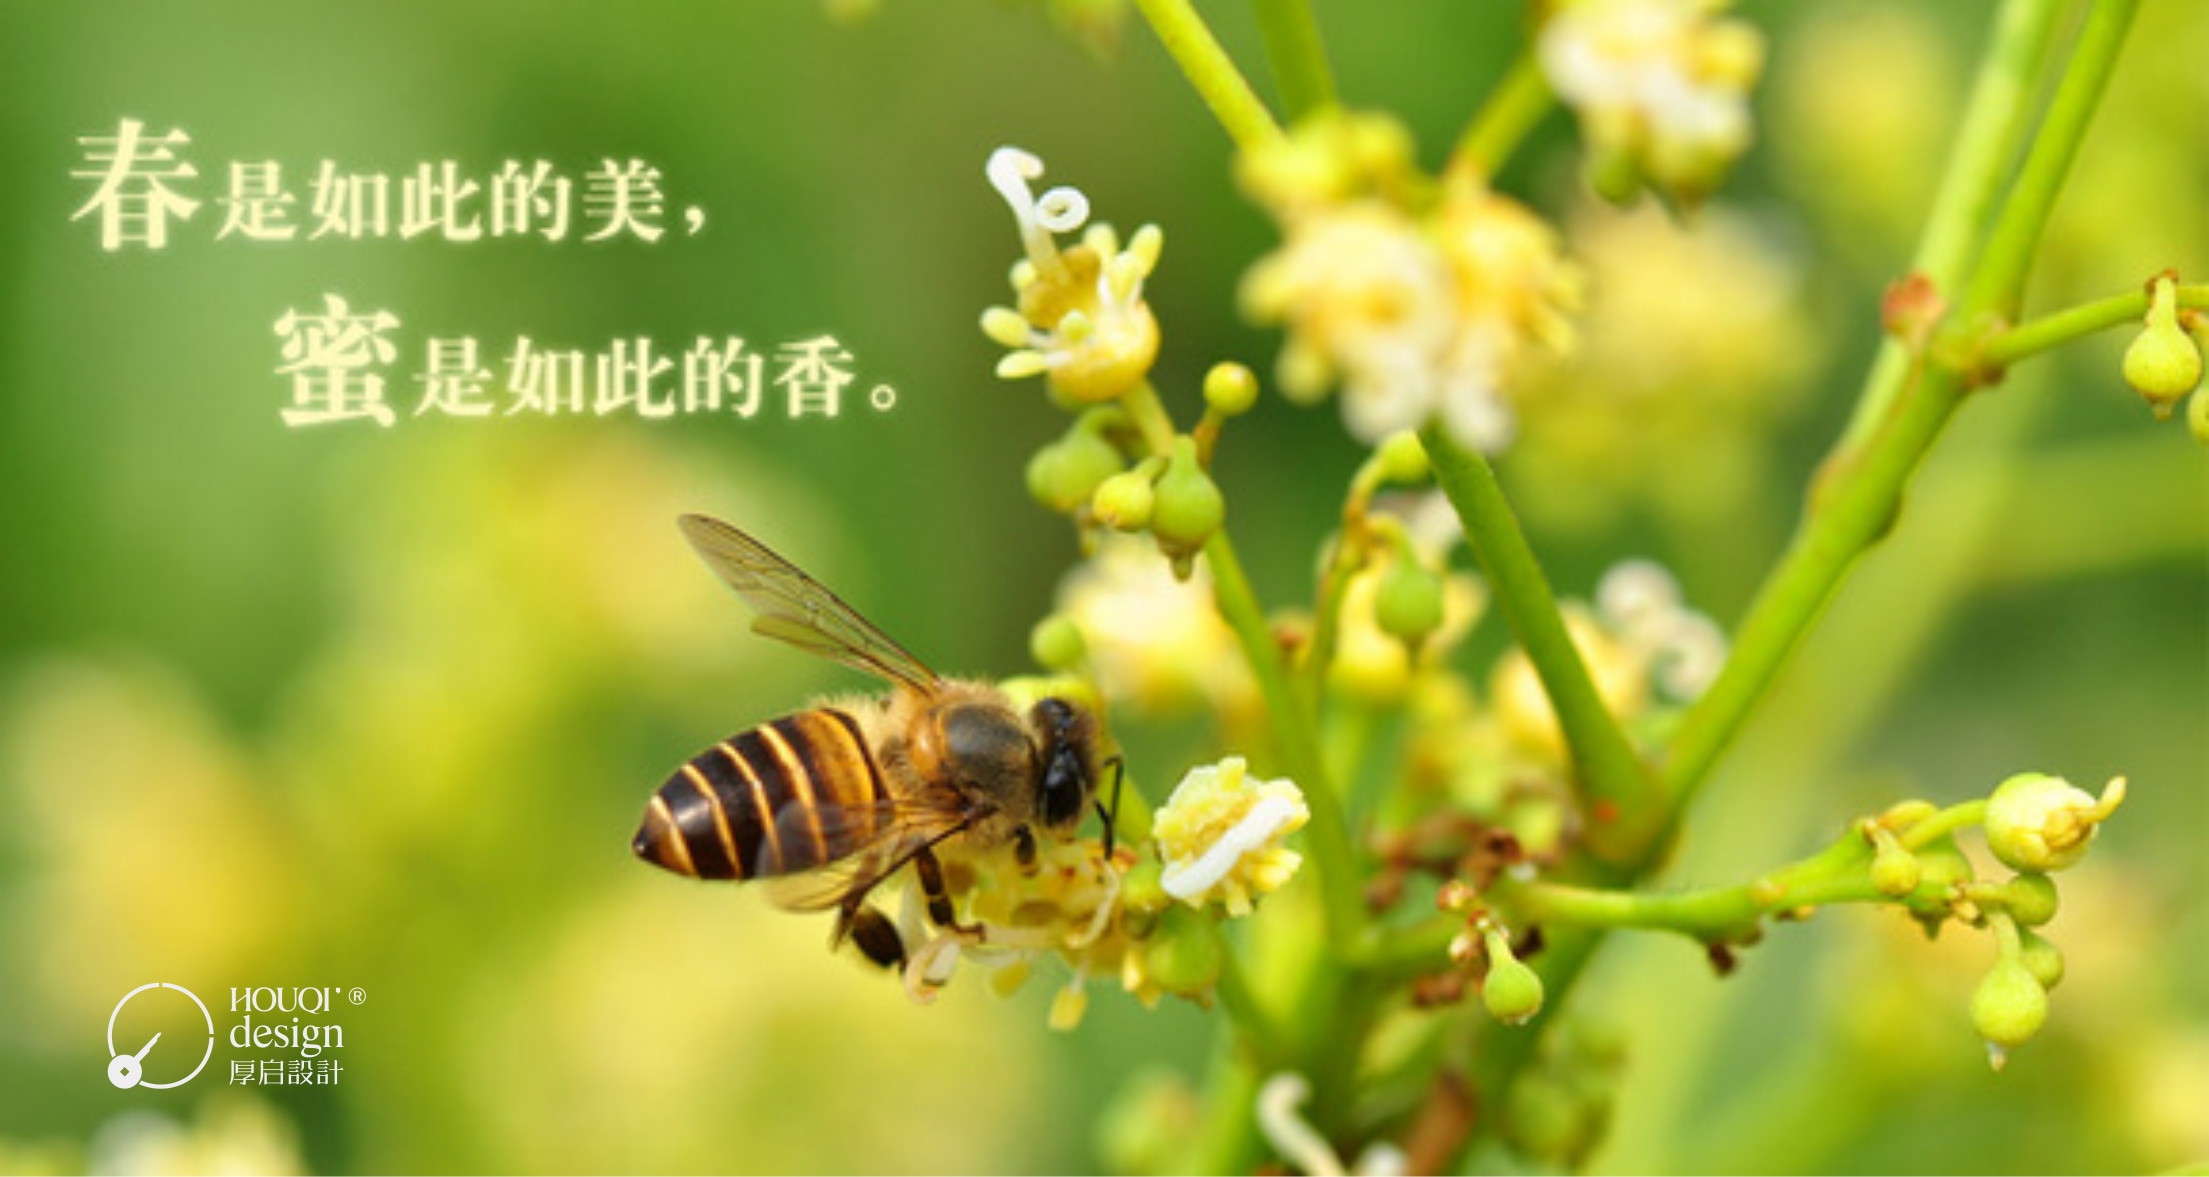 澳门游戏官网良辰觅蜜系列土蜂蜜包装设计(图1)